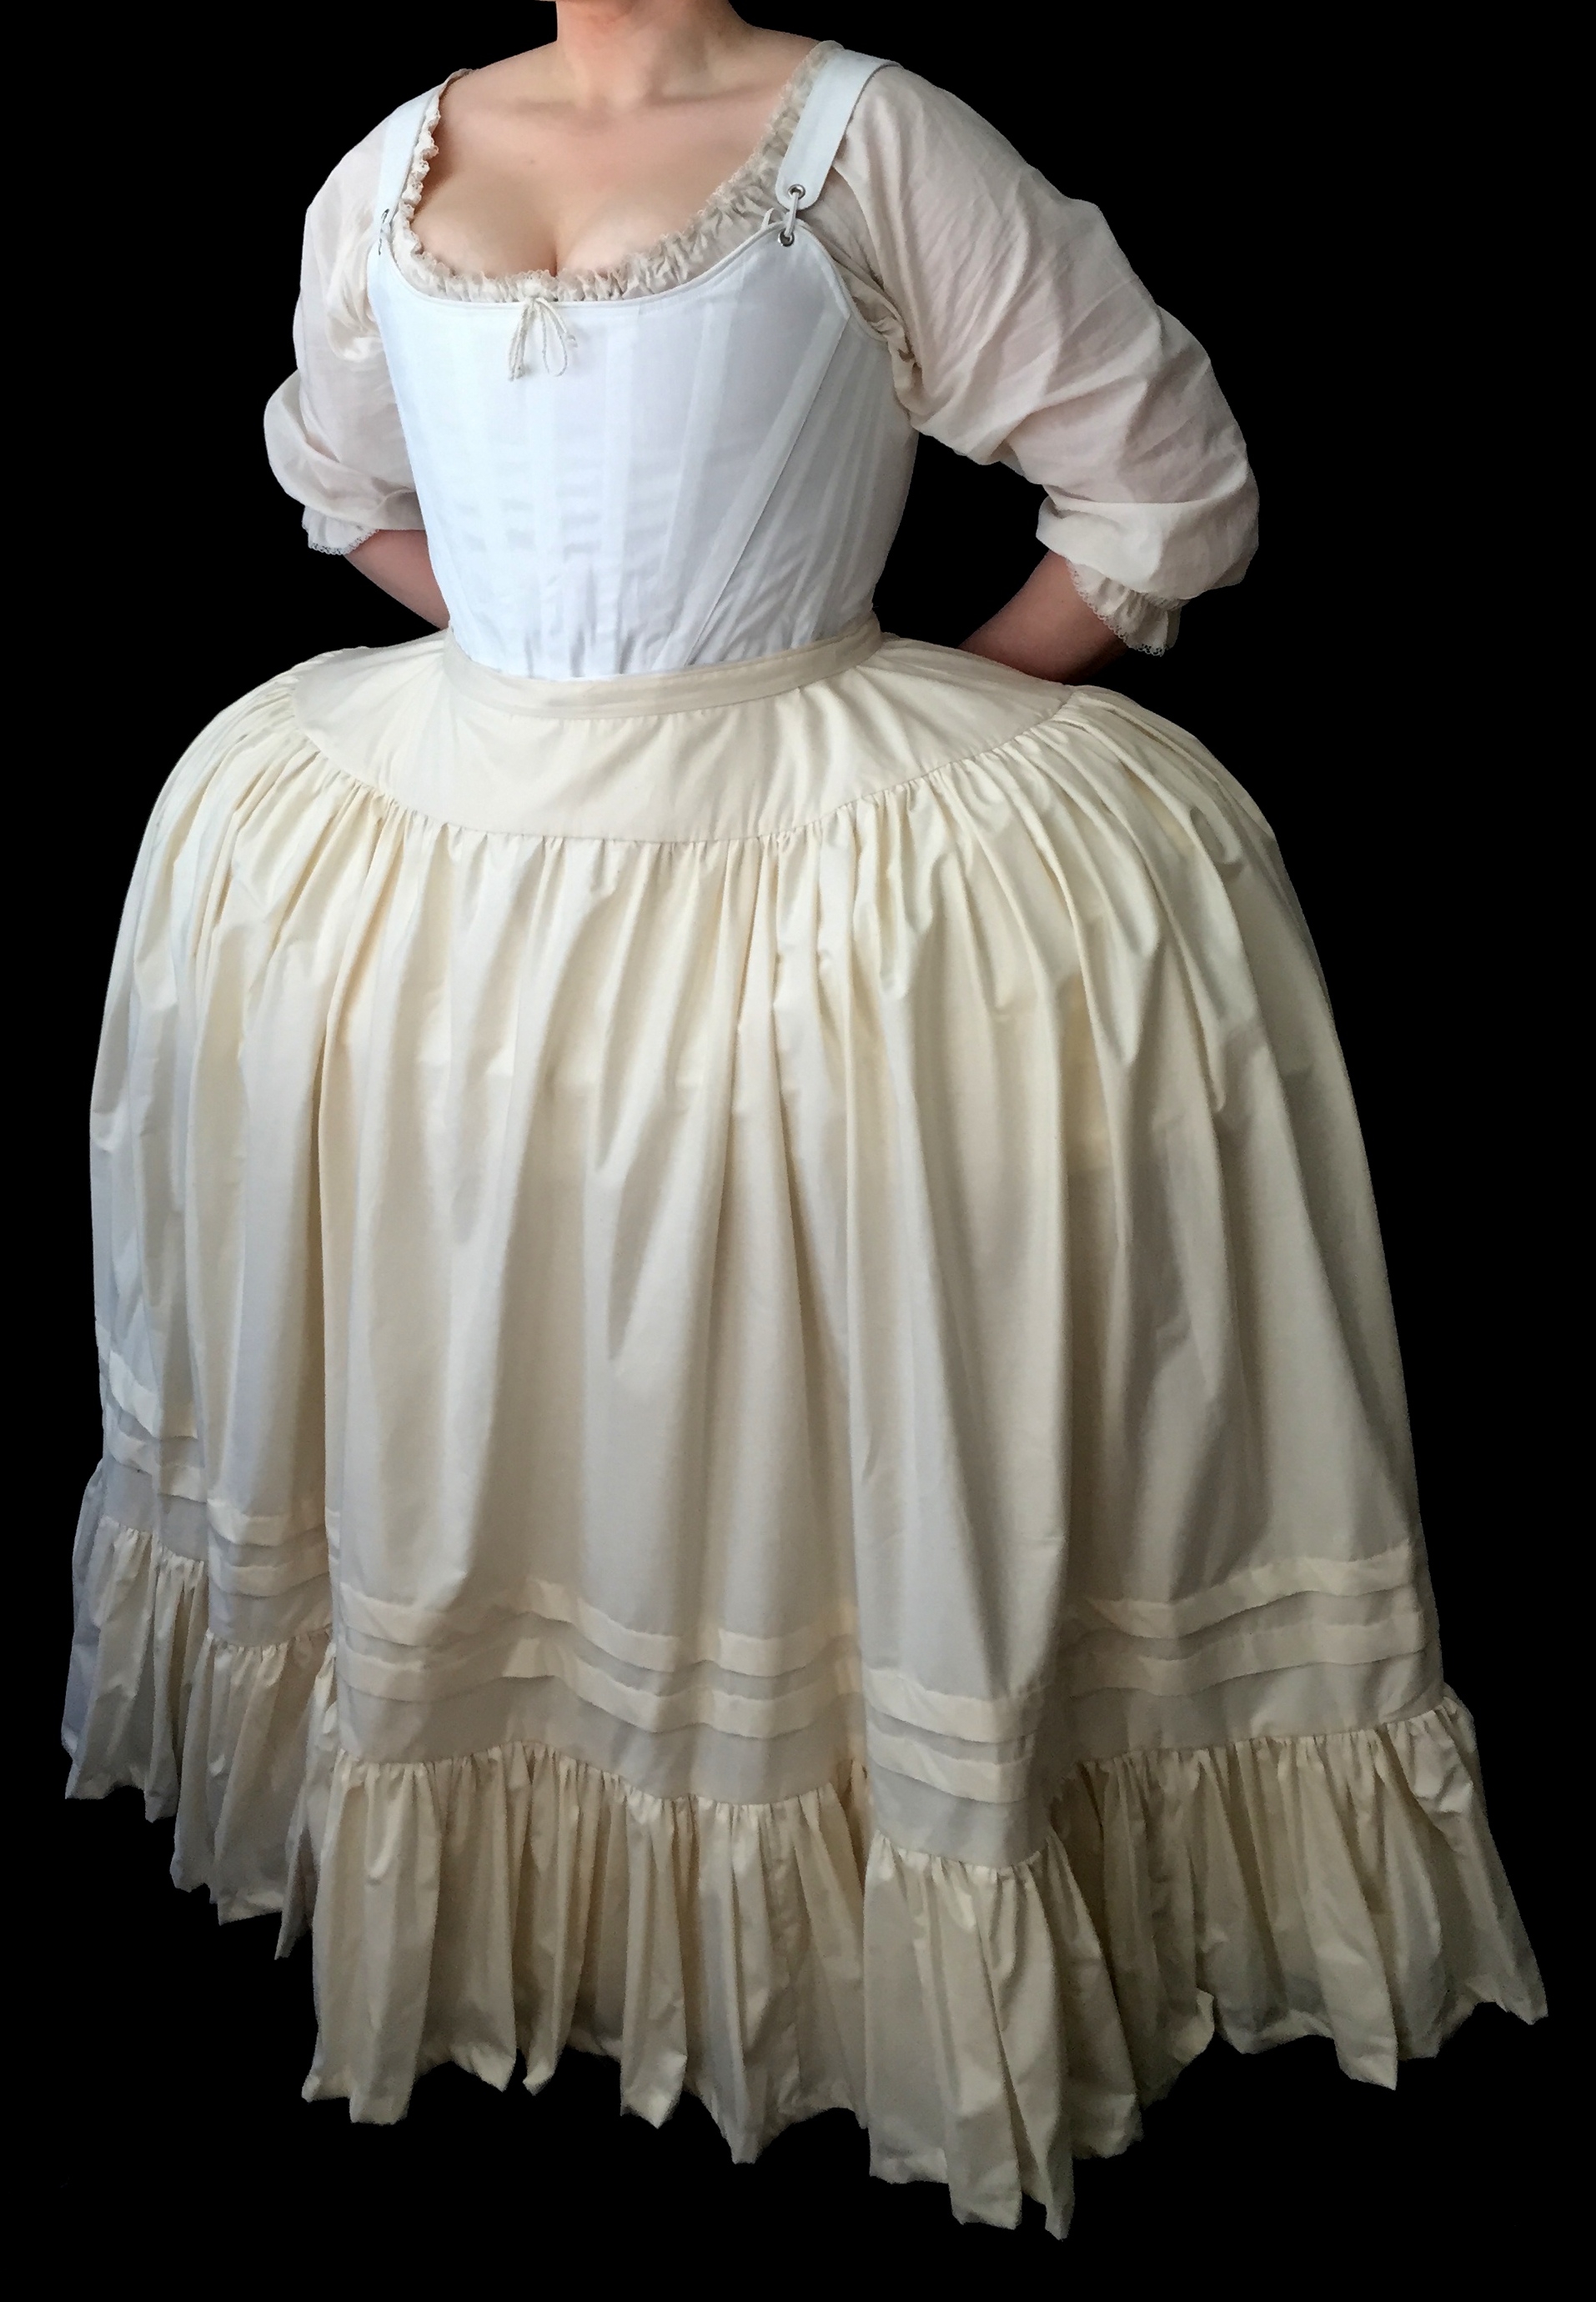 18th c. Petticoat — Period Corsets